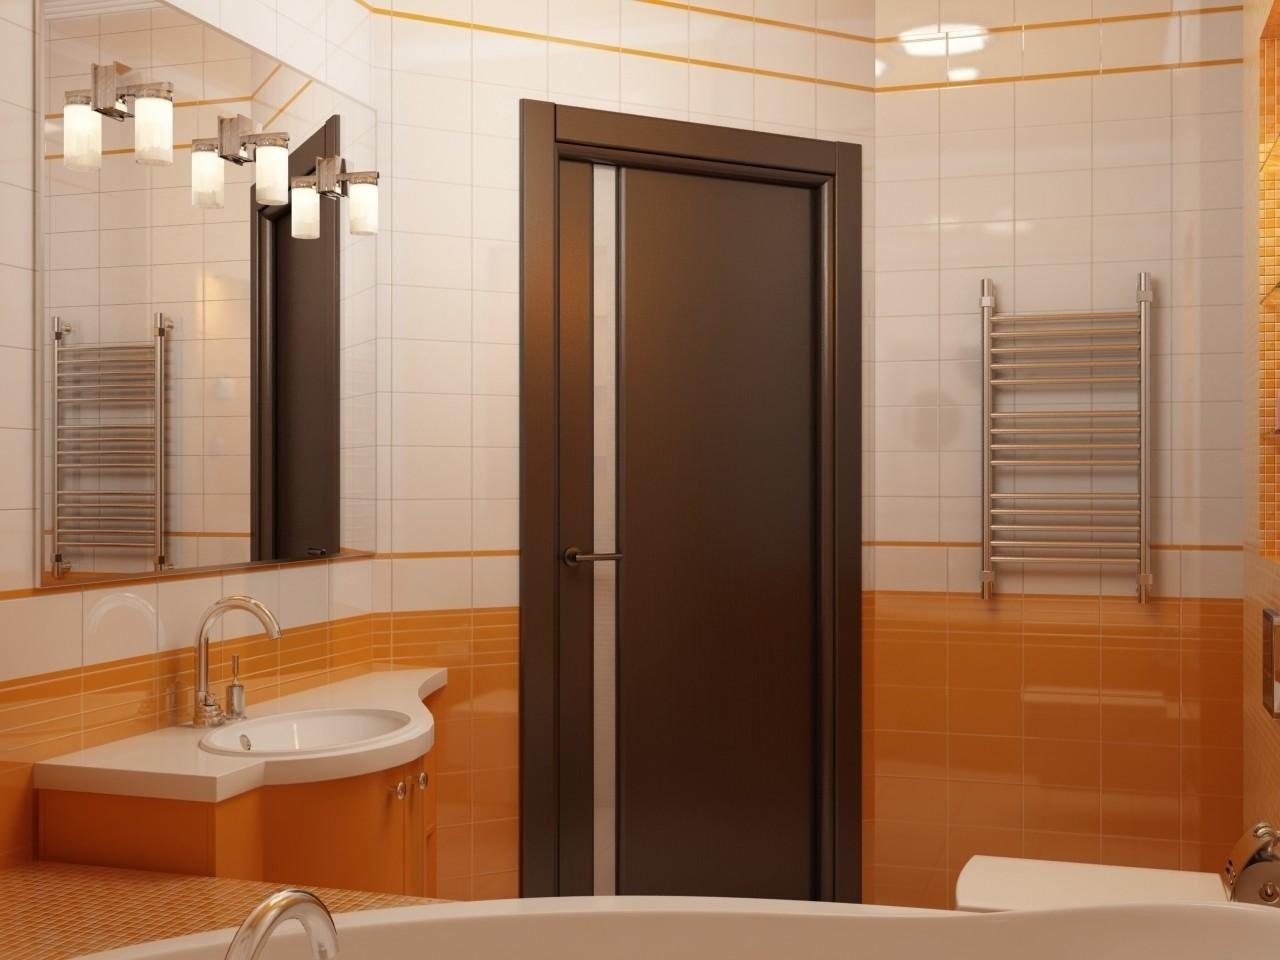 Двери в ванной комнате фото. Дверь в ванную. Межкомнатные двери в ванную. Дверь для ванной комнаты и туалета. Двери в ванную комнату и туалет.